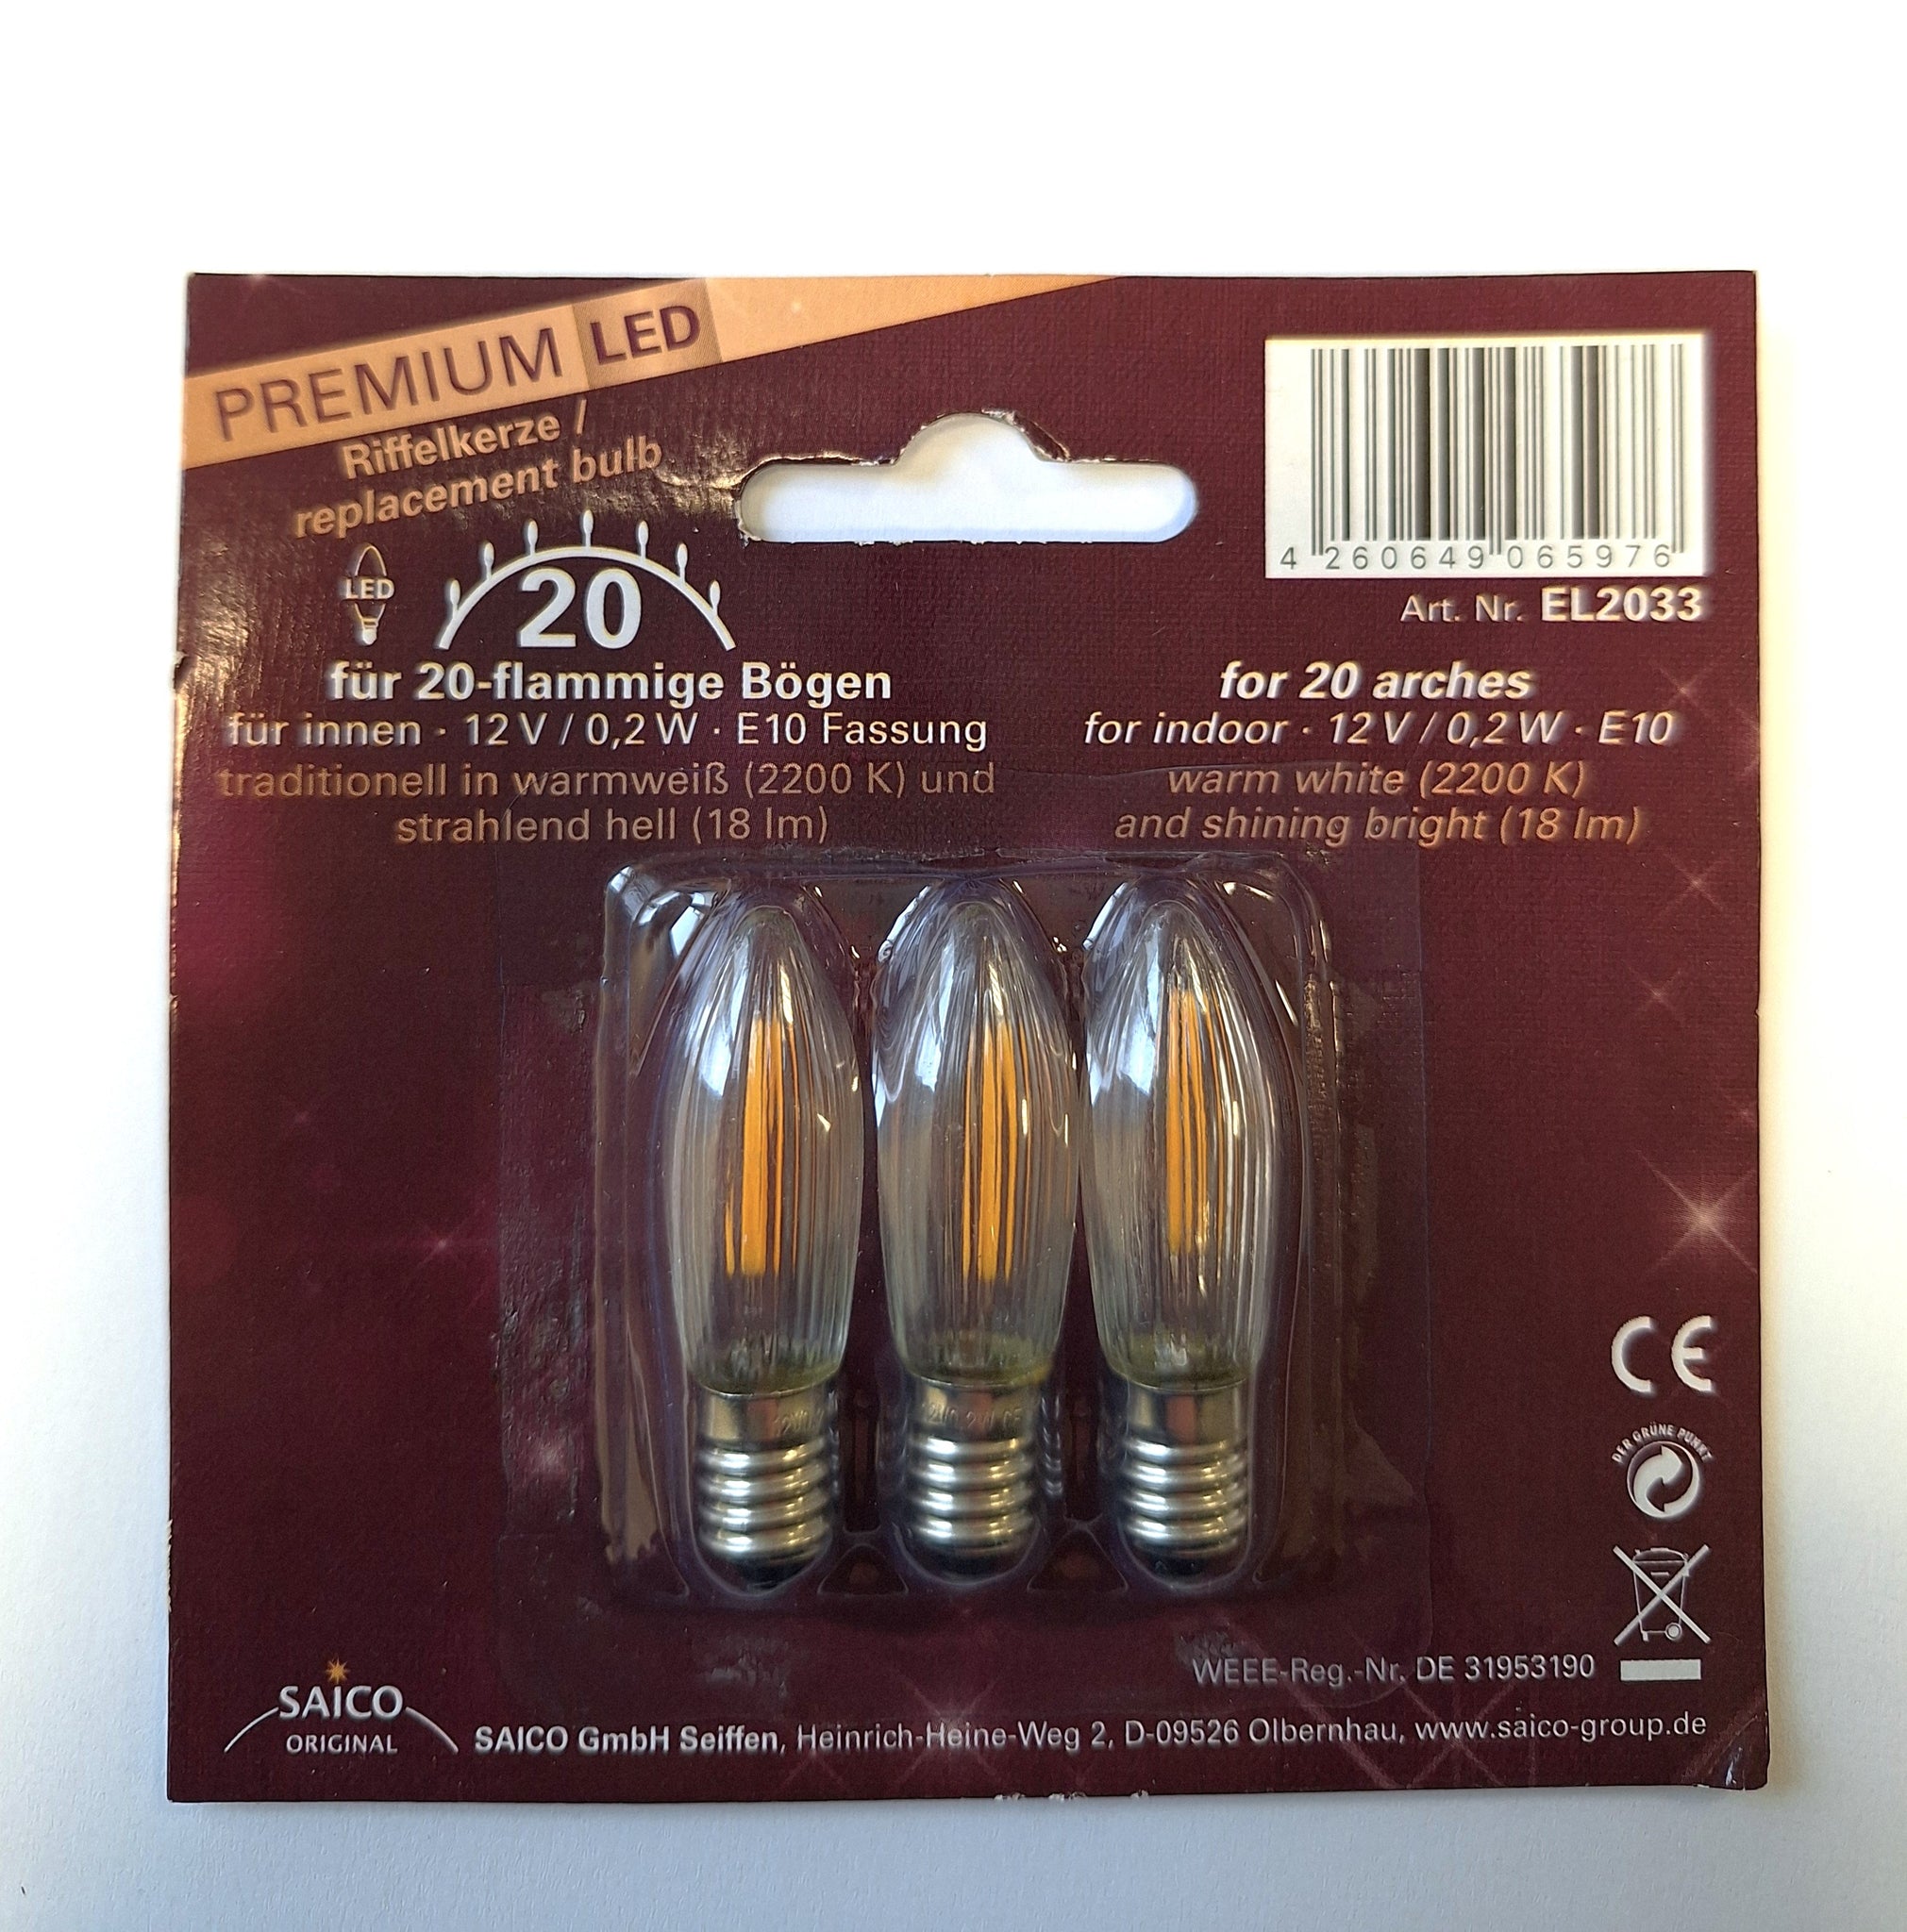 Premium LED Ersatz-/ Riffelkerzen 3x 12V - 0,2W - E10